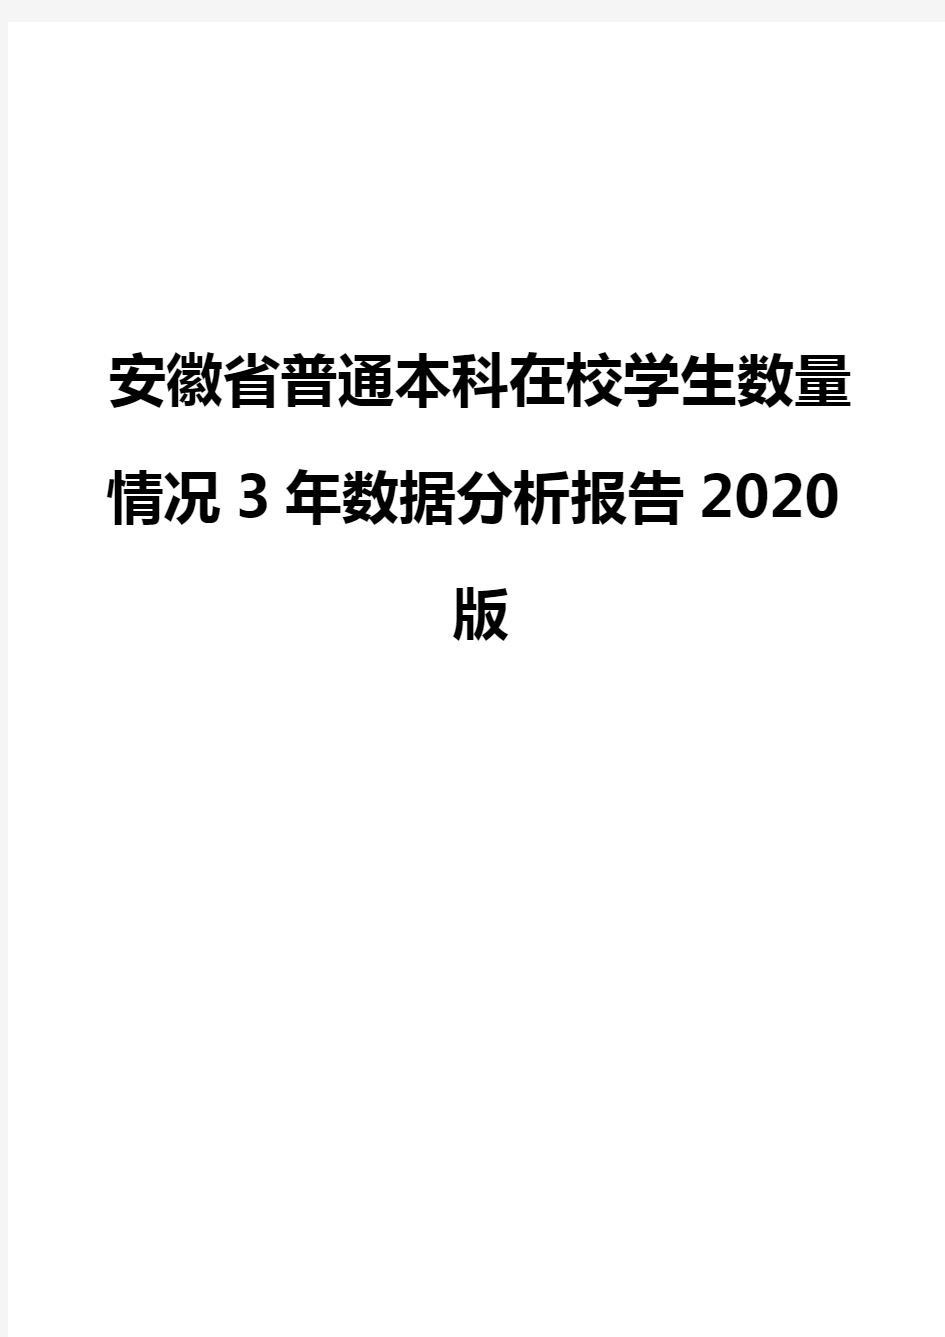 安徽省普通本科在校学生数量情况3年数据分析报告2020版